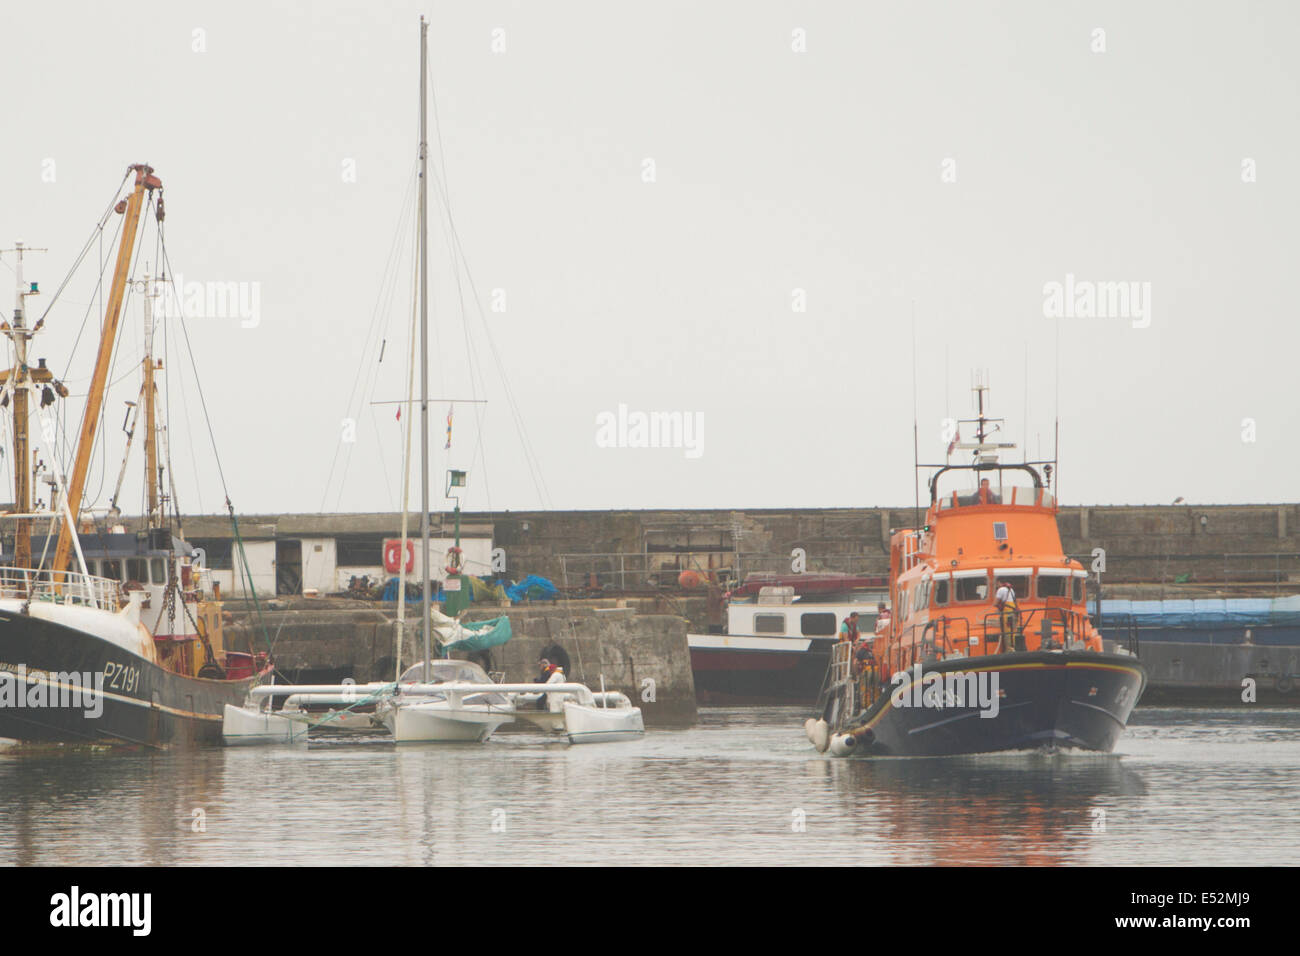 Newlyn, UK. 18 juillet, 2014. L'embarcation de Penlee remorque une trimaran de 30 pieds dans le port de Newlyn après un temps orageux overnigh Crédit : © Ashley Hugo/Alamy Live News Banque D'Images